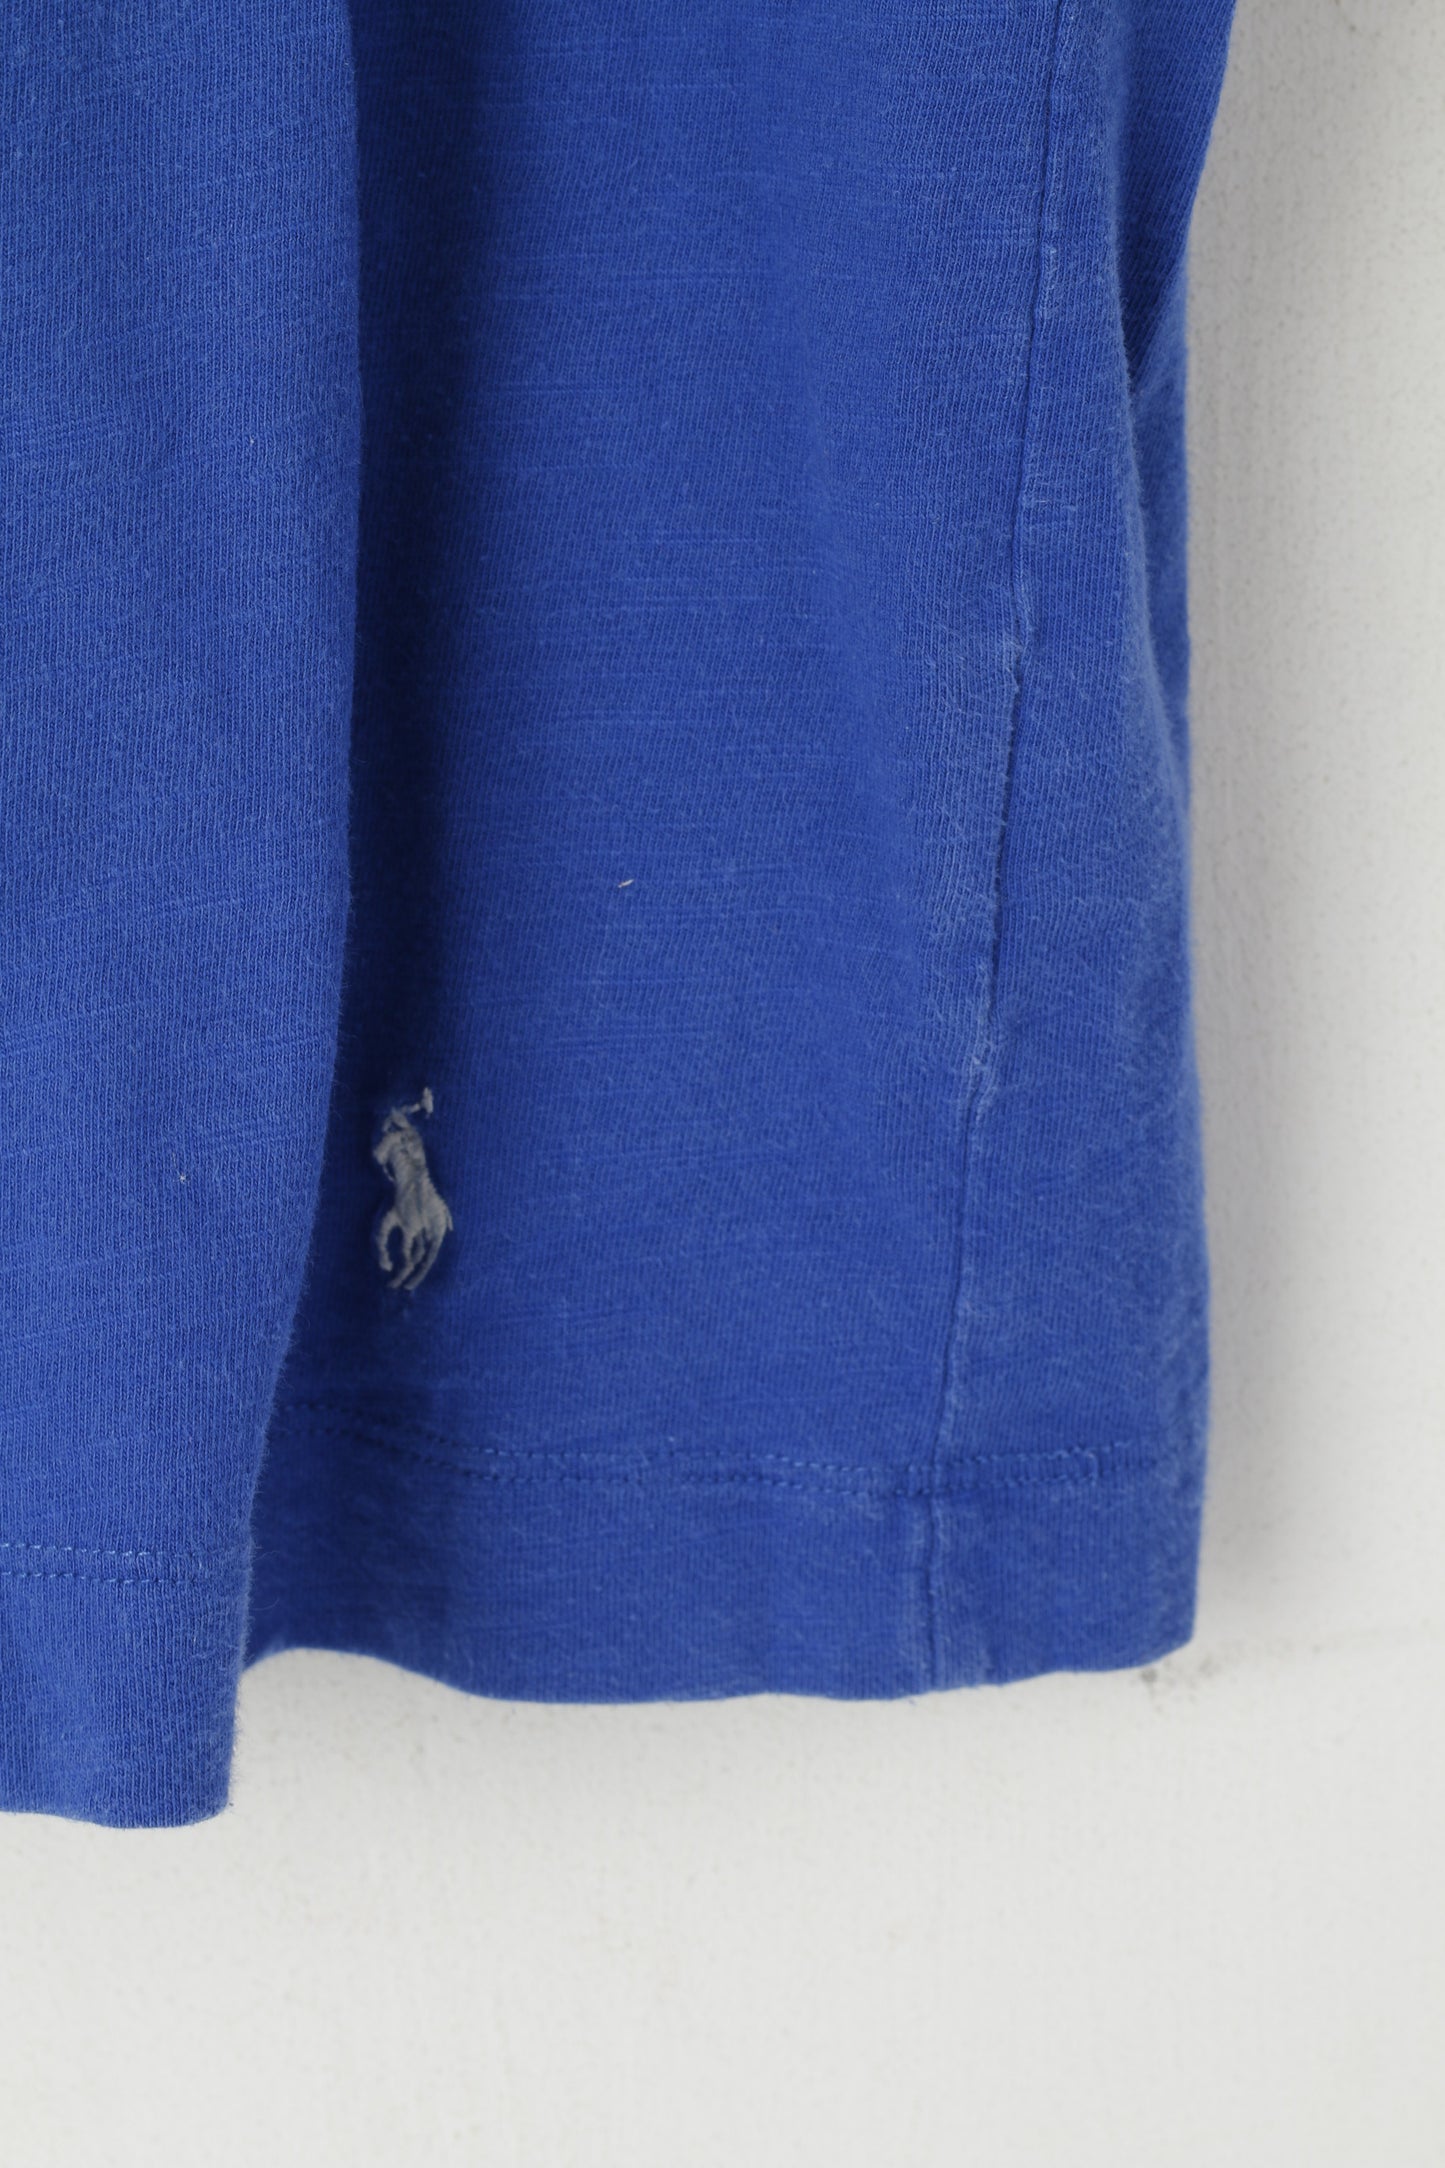 Polo Ralph Lauren Sleepwear Men L Shirt Blue Cotton Short Sleeve Top